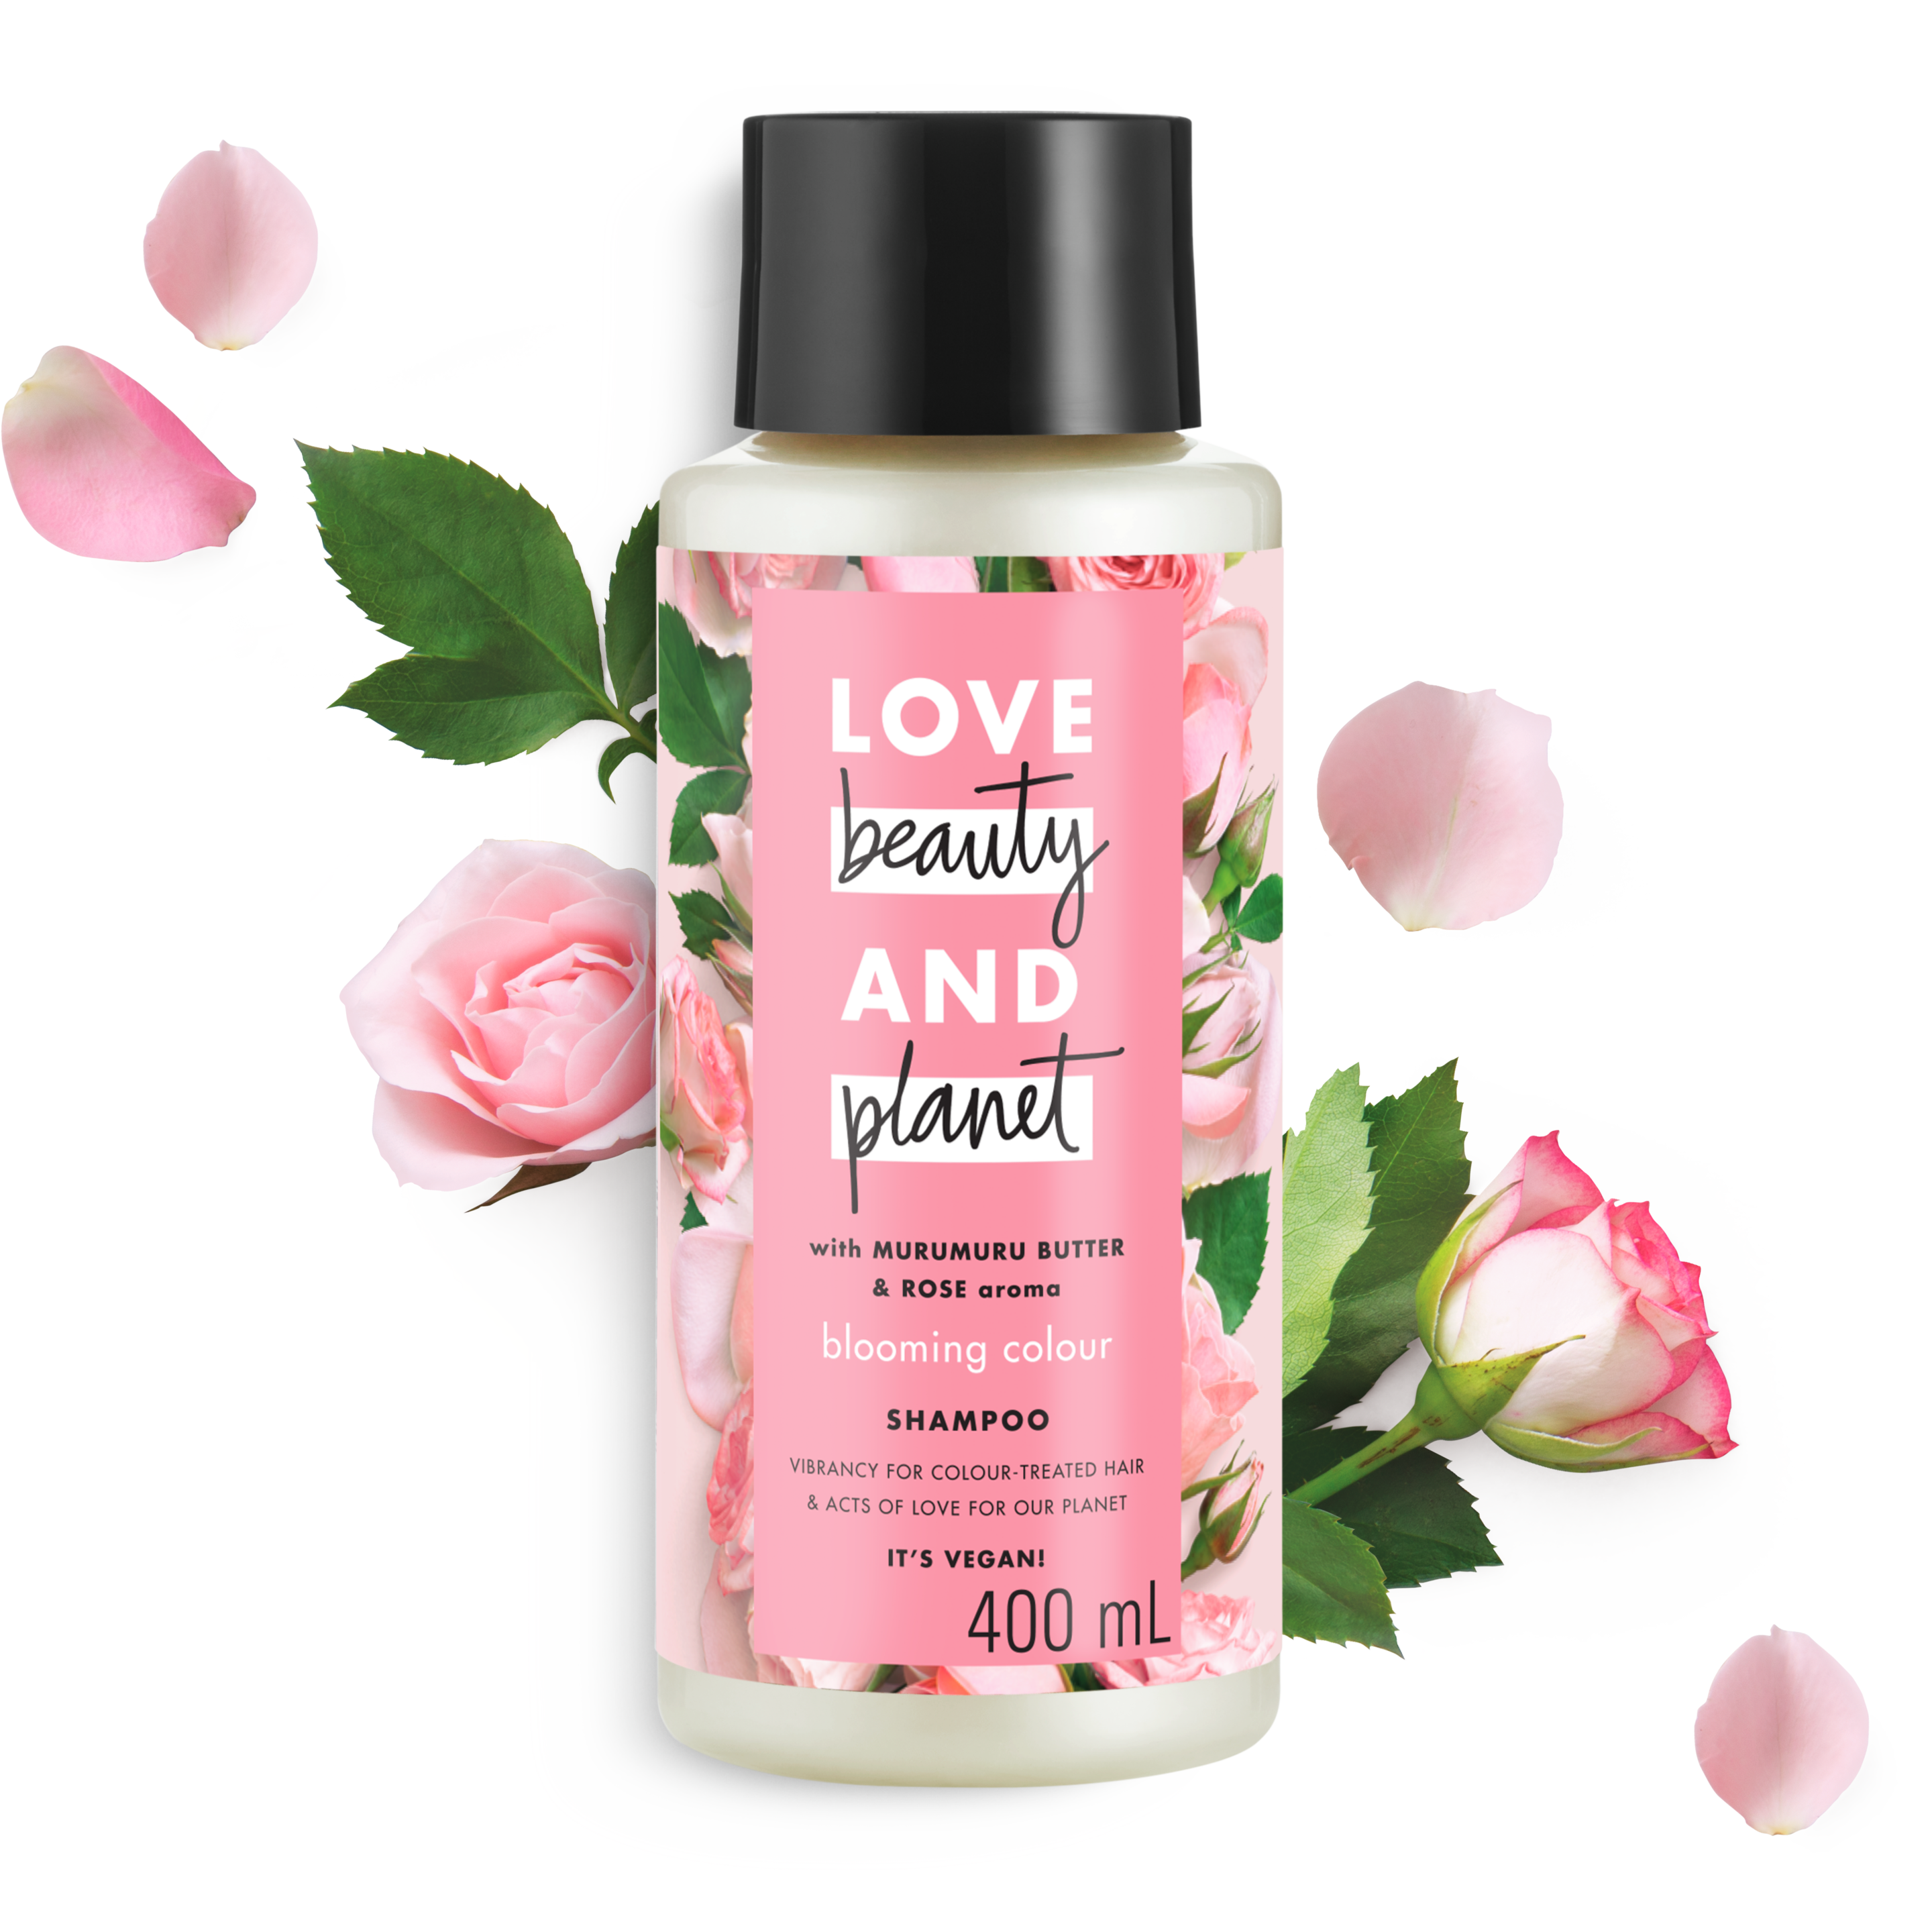 Tampak depan kemasan Love Beauty and Planet Murumuru Butter & Rose Shampoo ukuran 400 ml